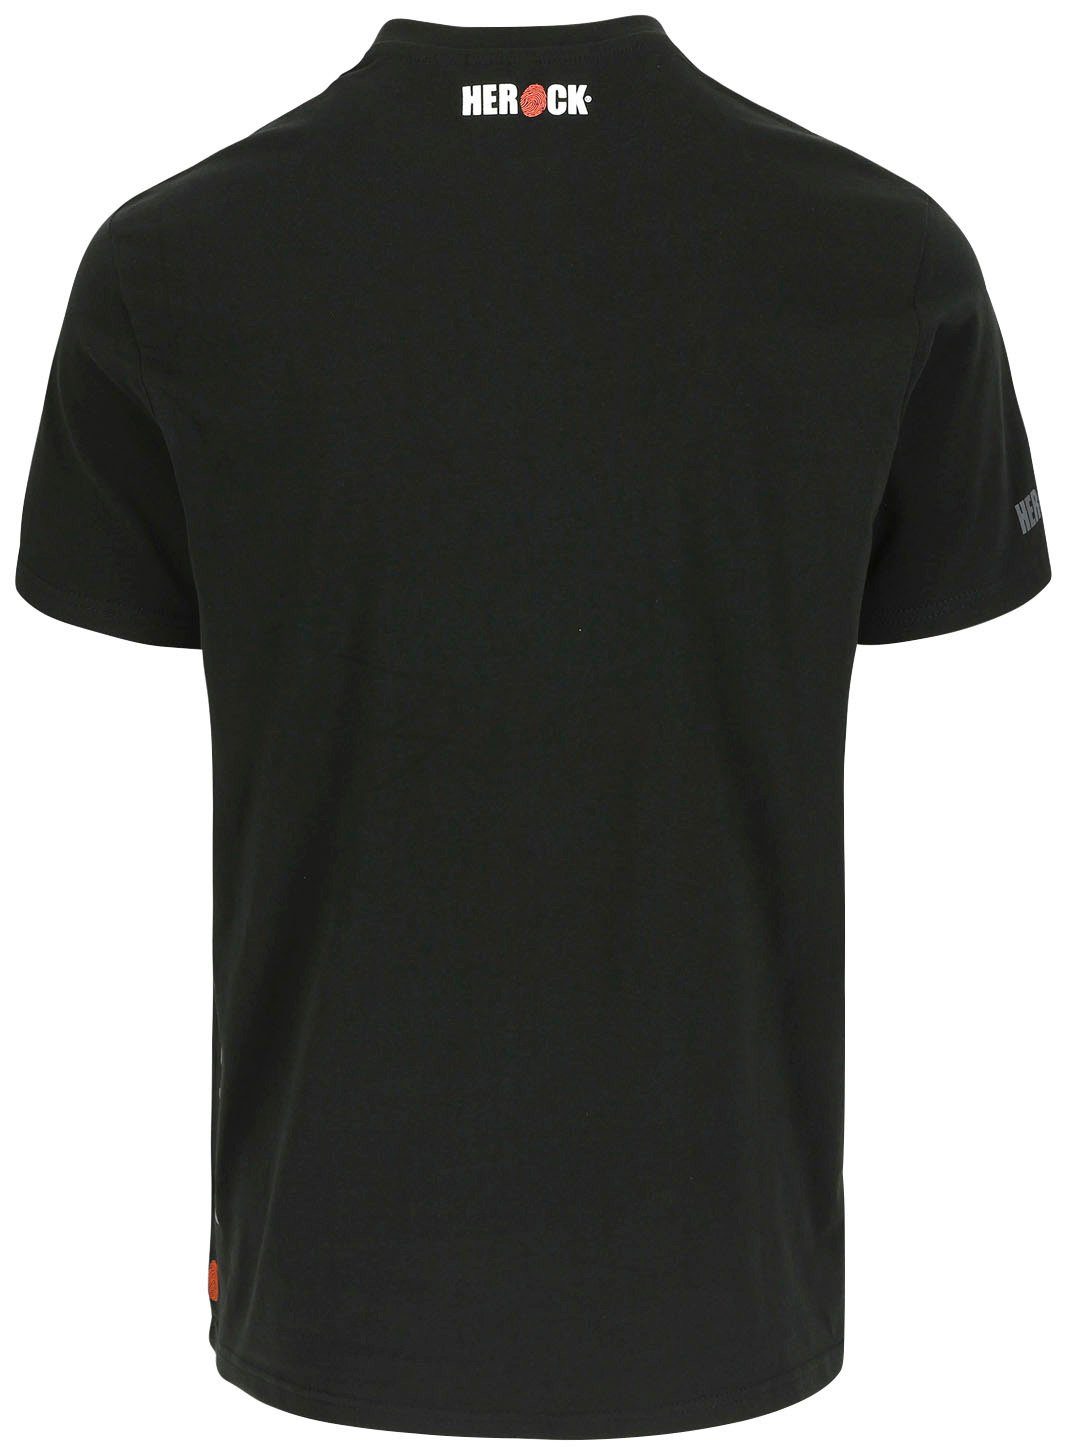 T-Shirt Rundhalsausschnitt, Ärmel Herock®-Aufdruck, kurze Callius T-Shirt kurze Rippstrickkragen Ärmel, Herock schwarz